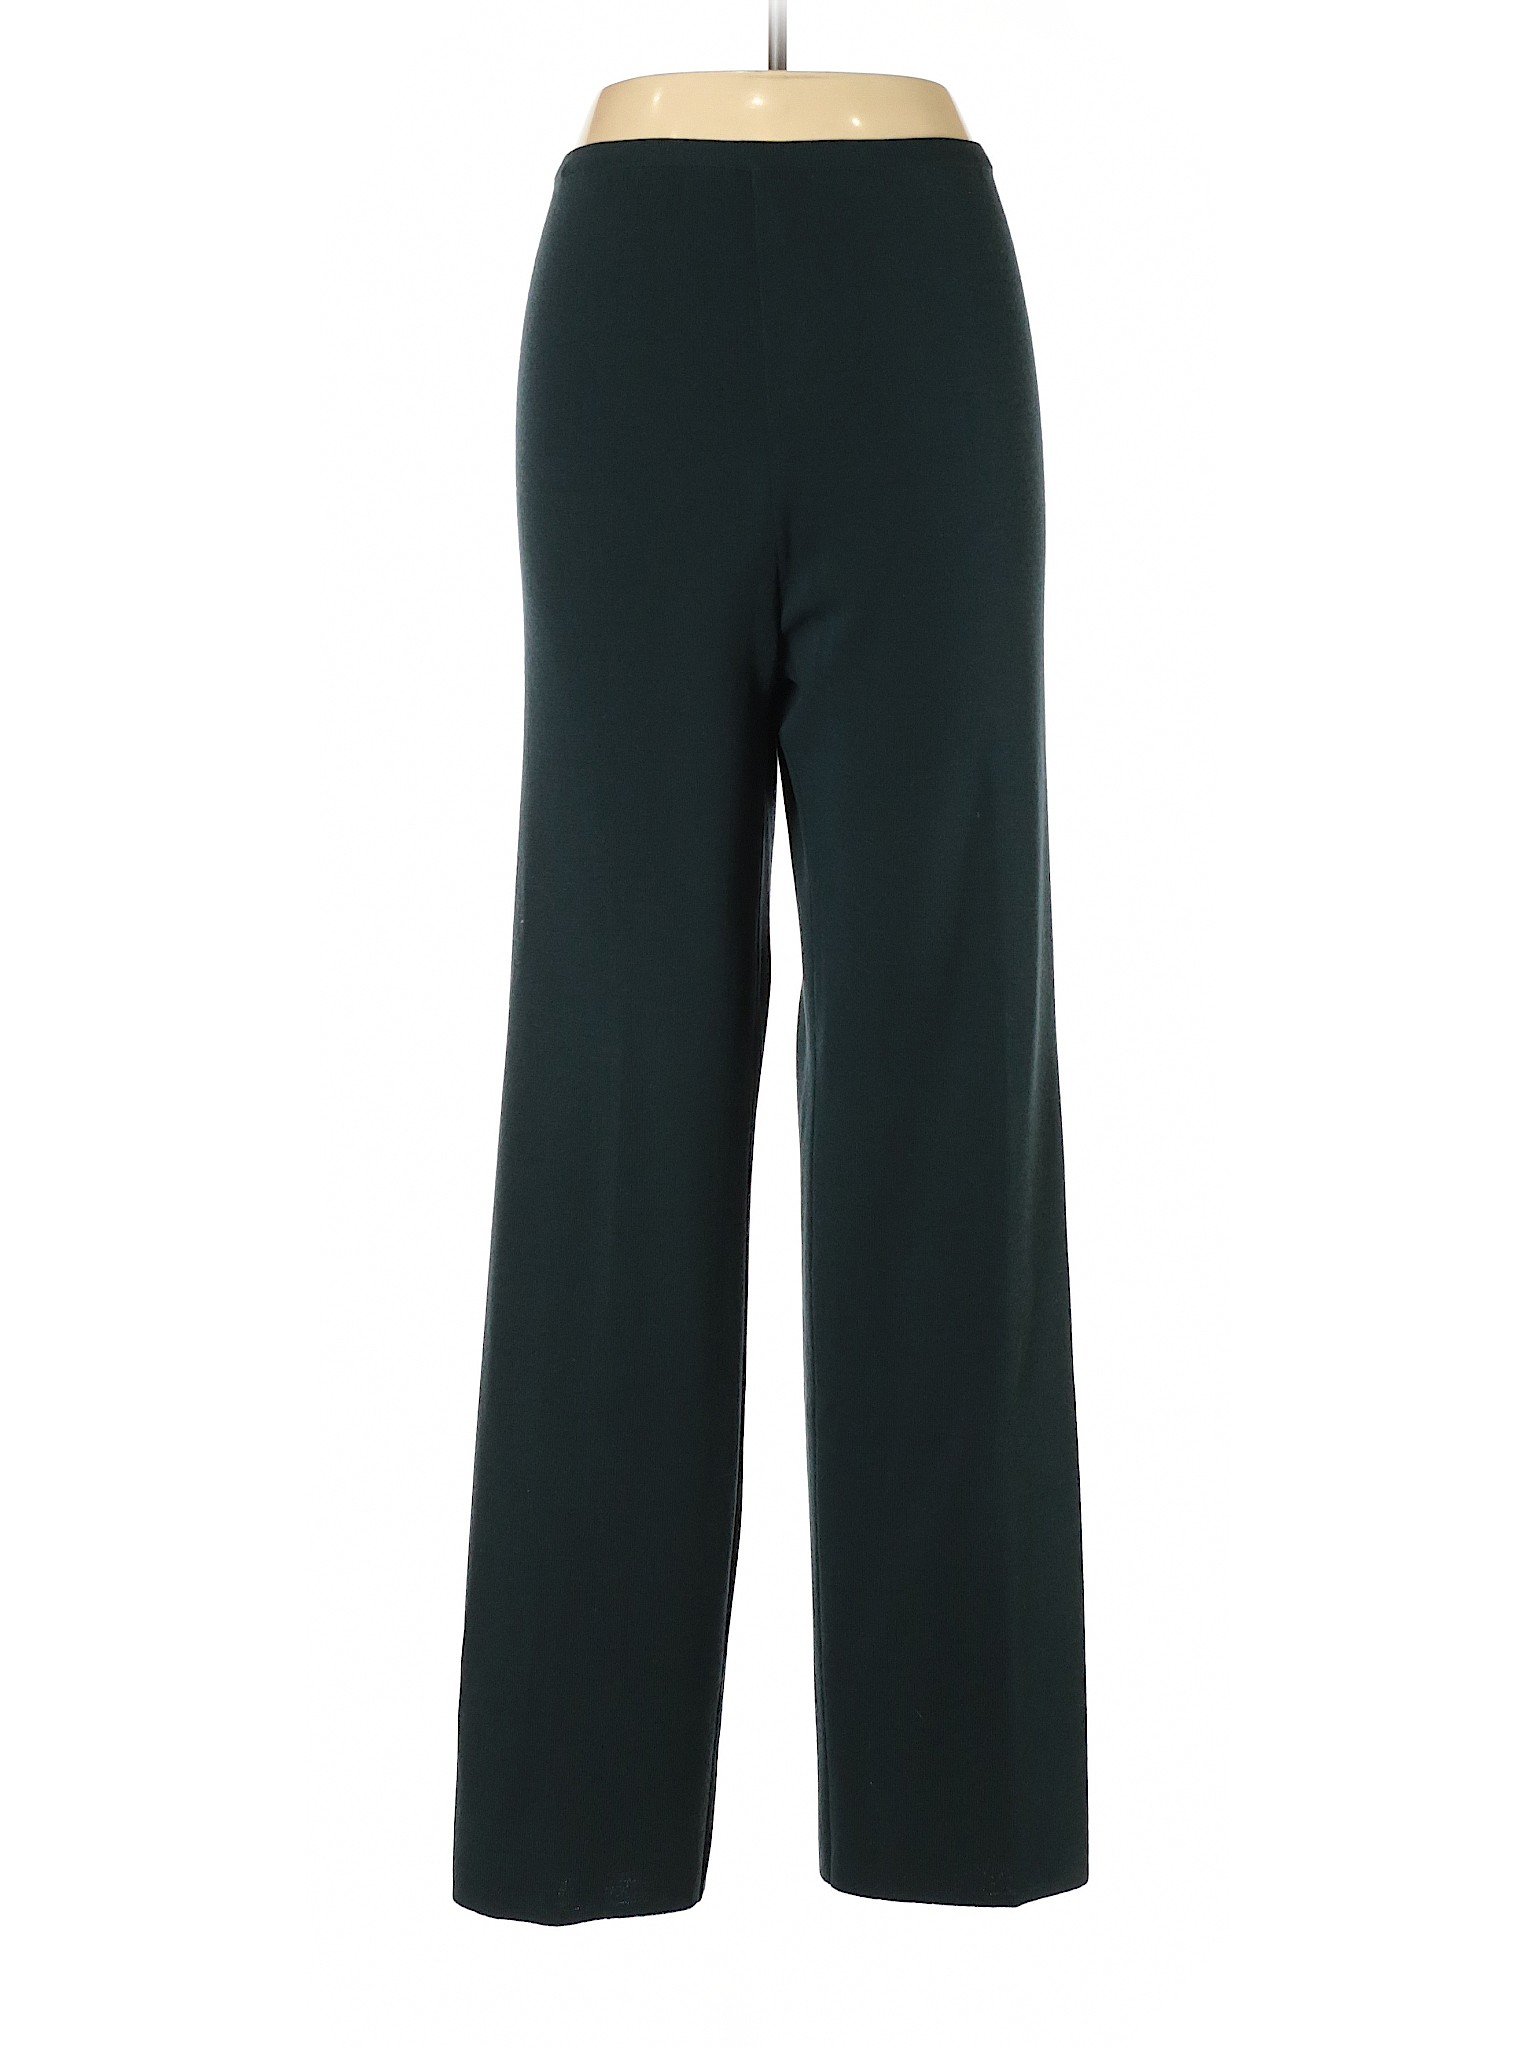 Jaeger Women Green Wool Pants L | eBay